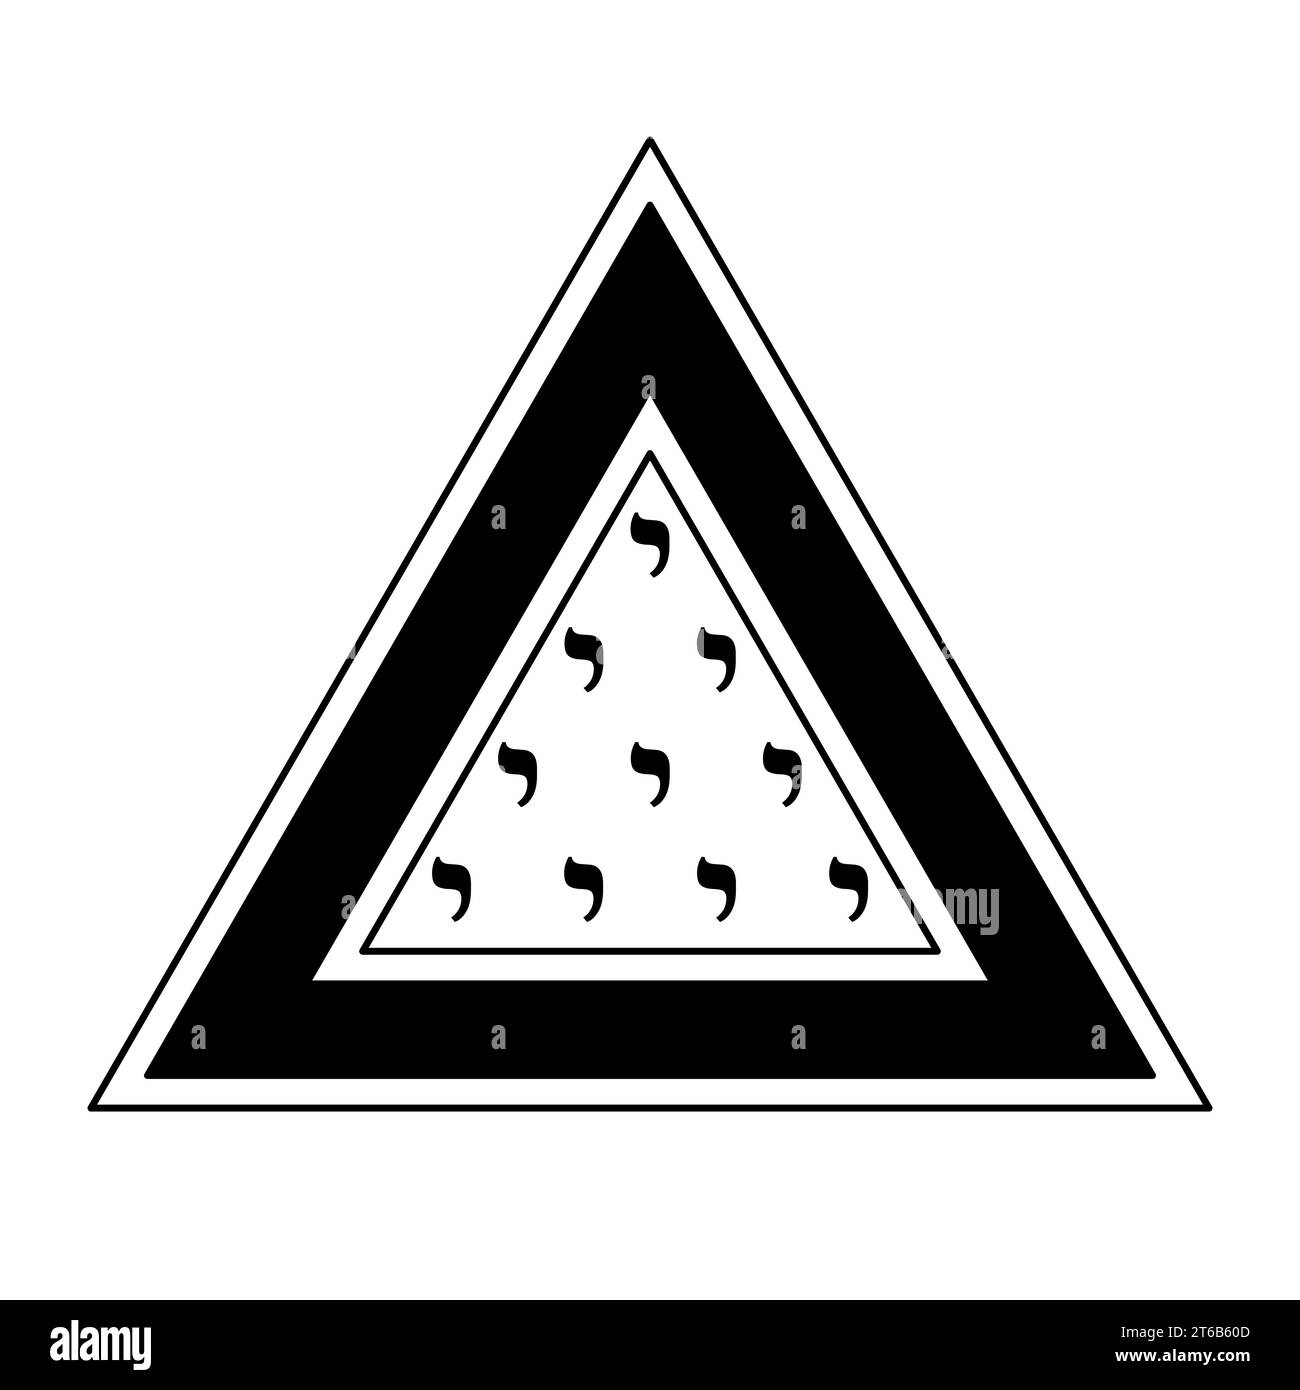 Simbolo Tetractys in un triangolo. Lettera Yod dall'alfabeto ebraico con il valore numerico 10, dieci volte disposte in quattro righe in una figura triangolare. Foto Stock